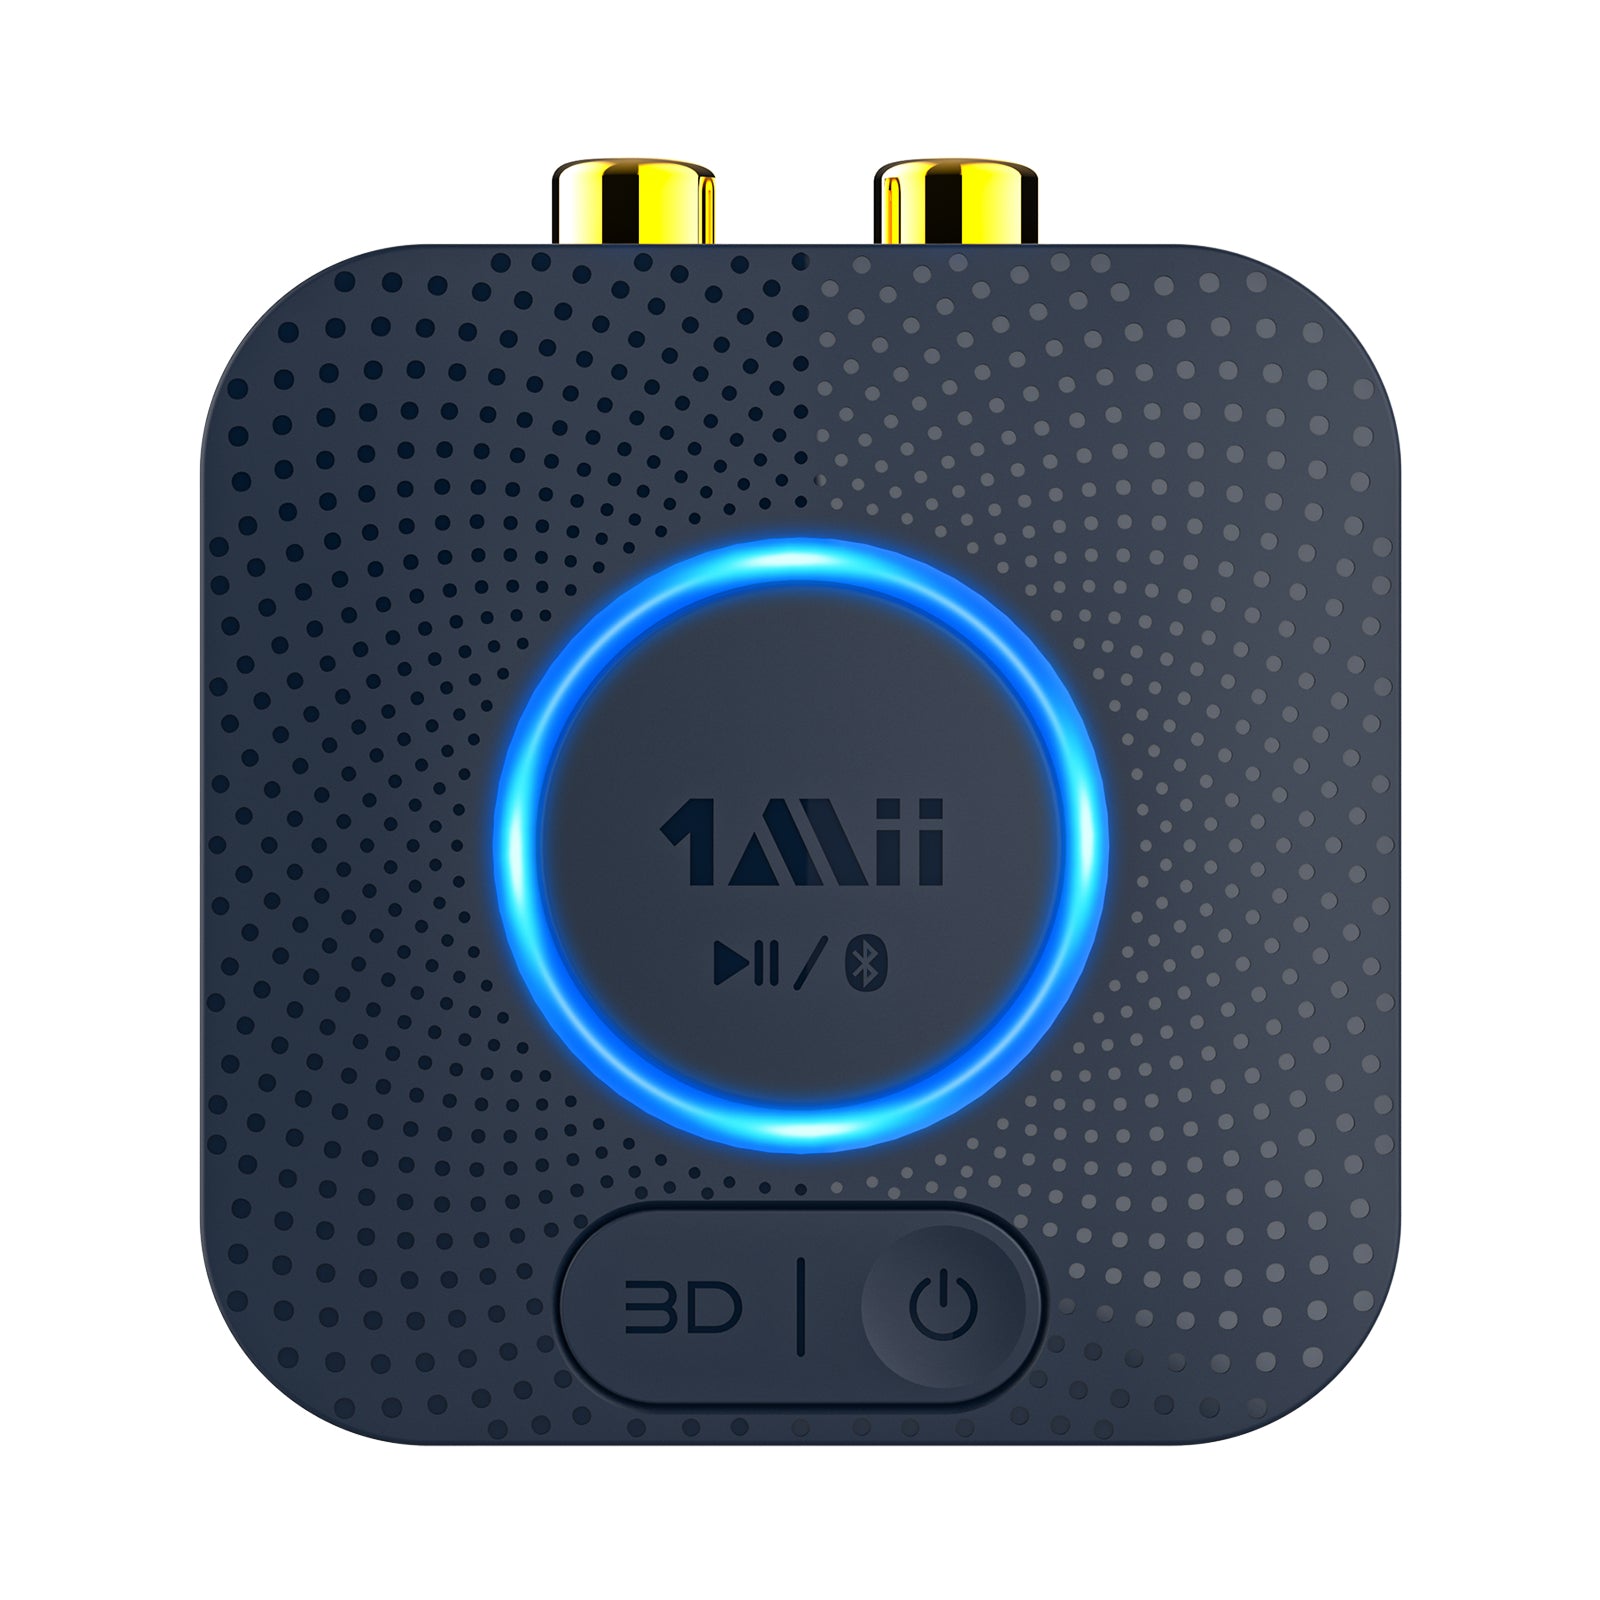 Receptor de alta fidelidad de B06HD Bluetooth